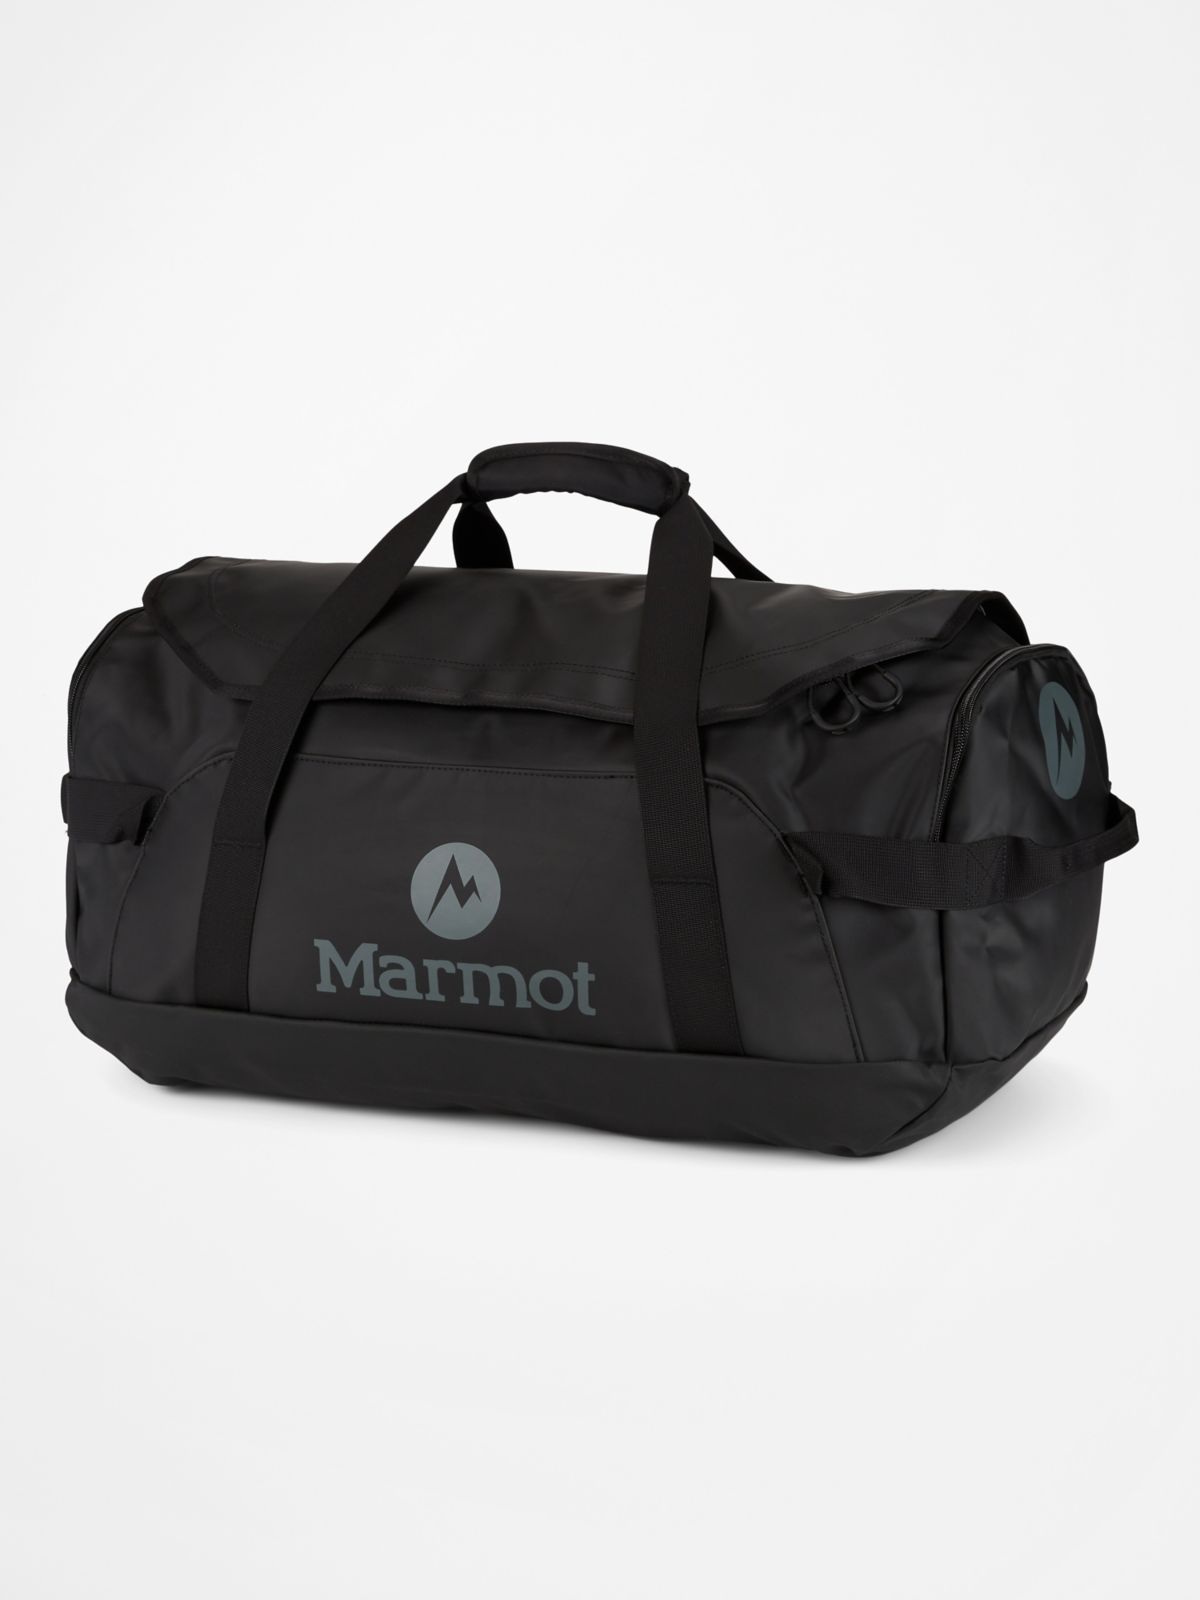 Long Hauler Duffel Bag - Medium | Marmot